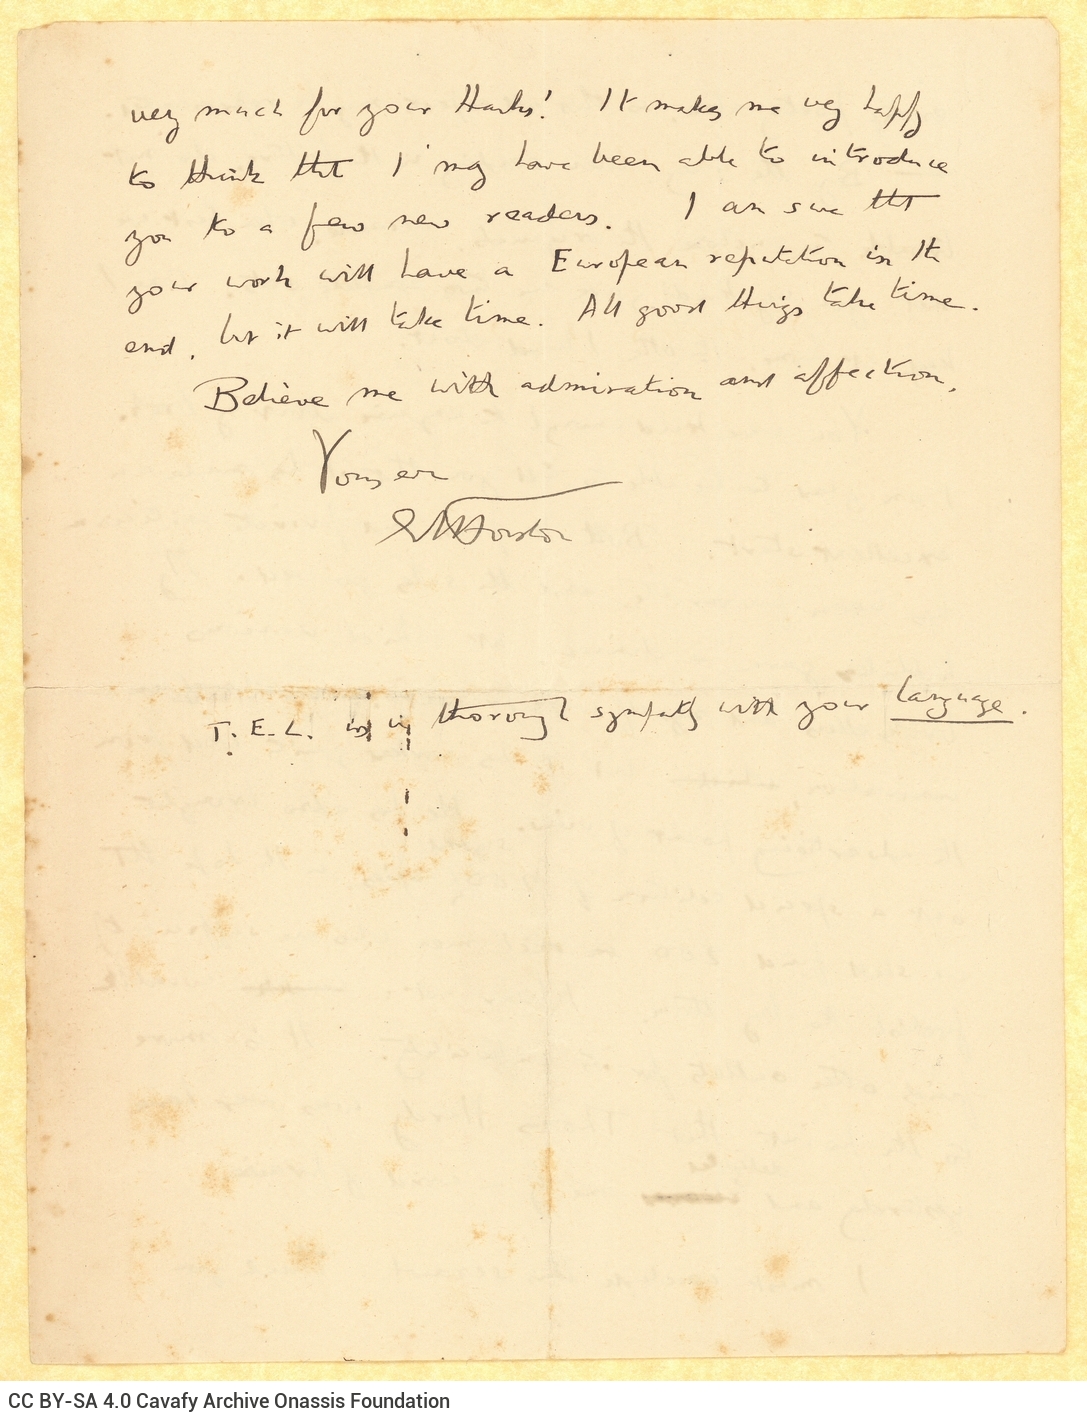 Χειρόγραφη επιστολή του Ε. Μ. Φόρστερ (E. M. Forster) προς τον Καβάφη σε αμφ�